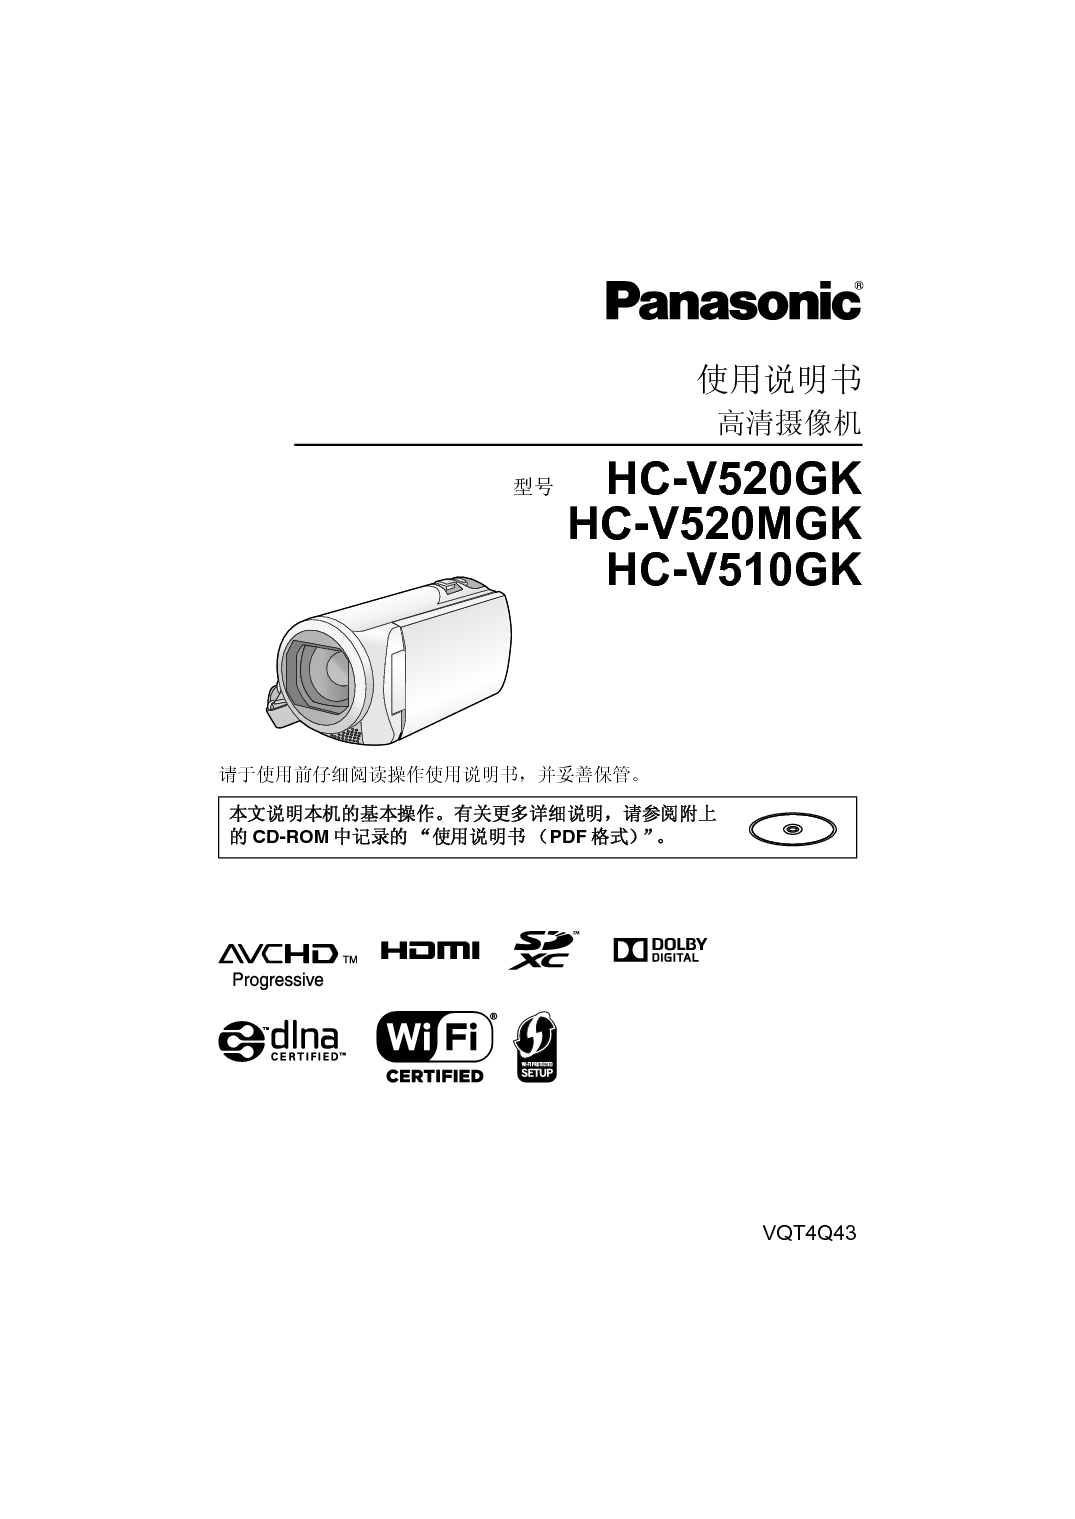 松下 Panasonic HC-V510GK 说明书 封面